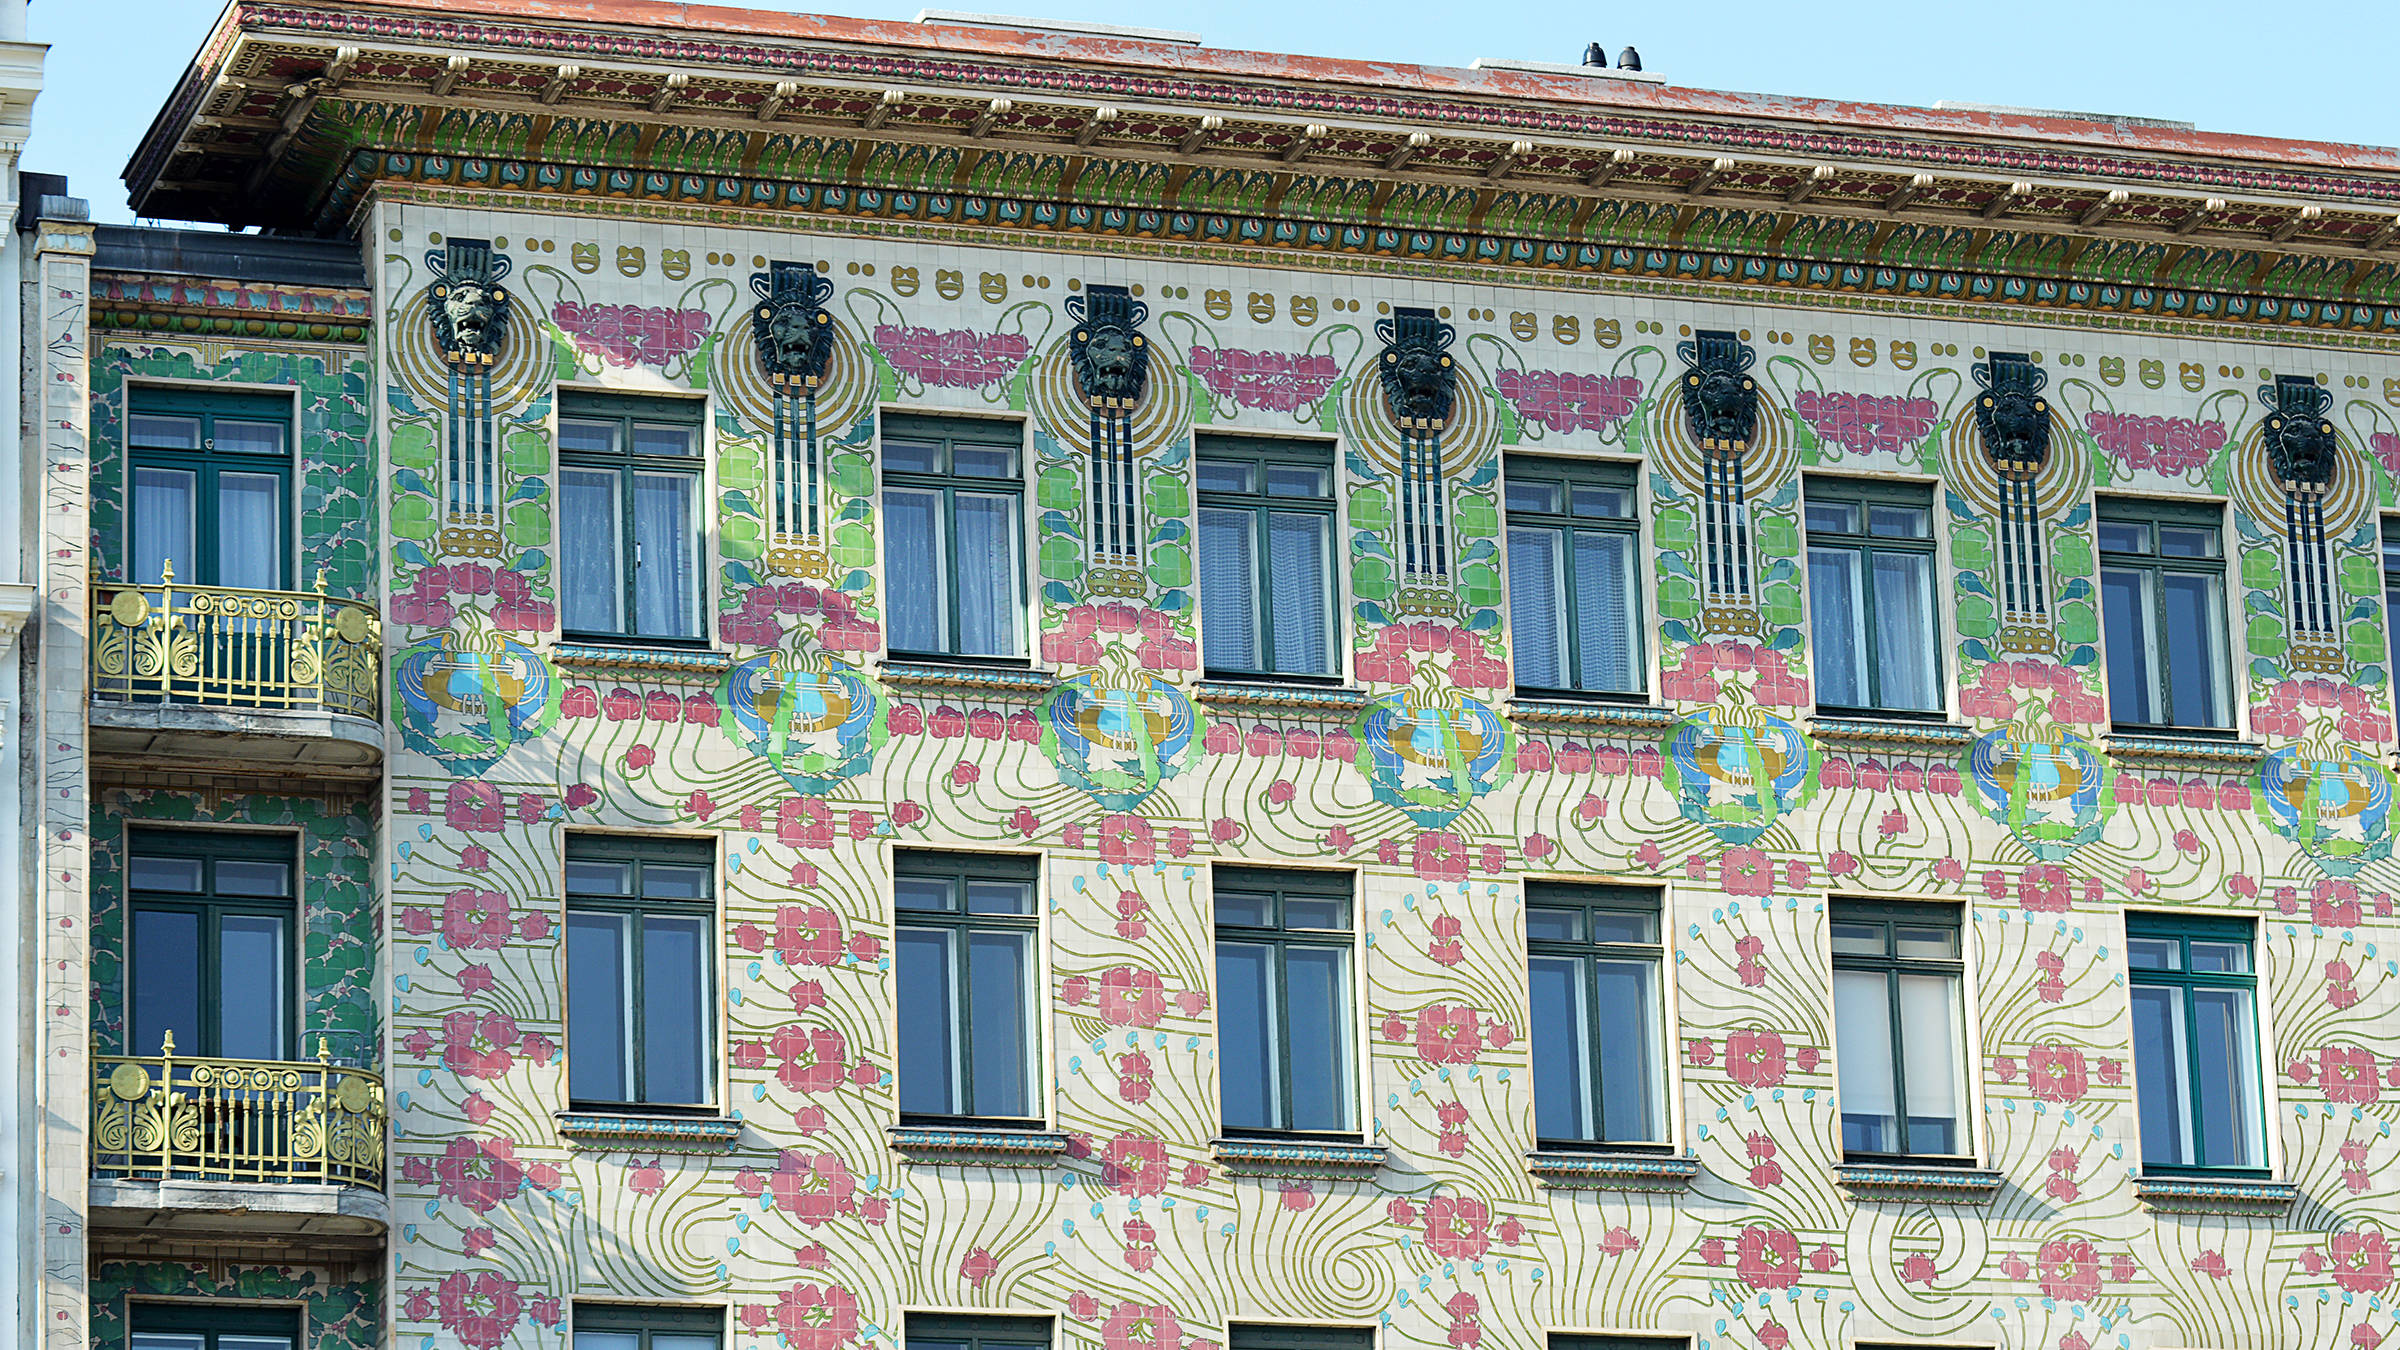 Majolikahaus in Wien | H-Hotels.com